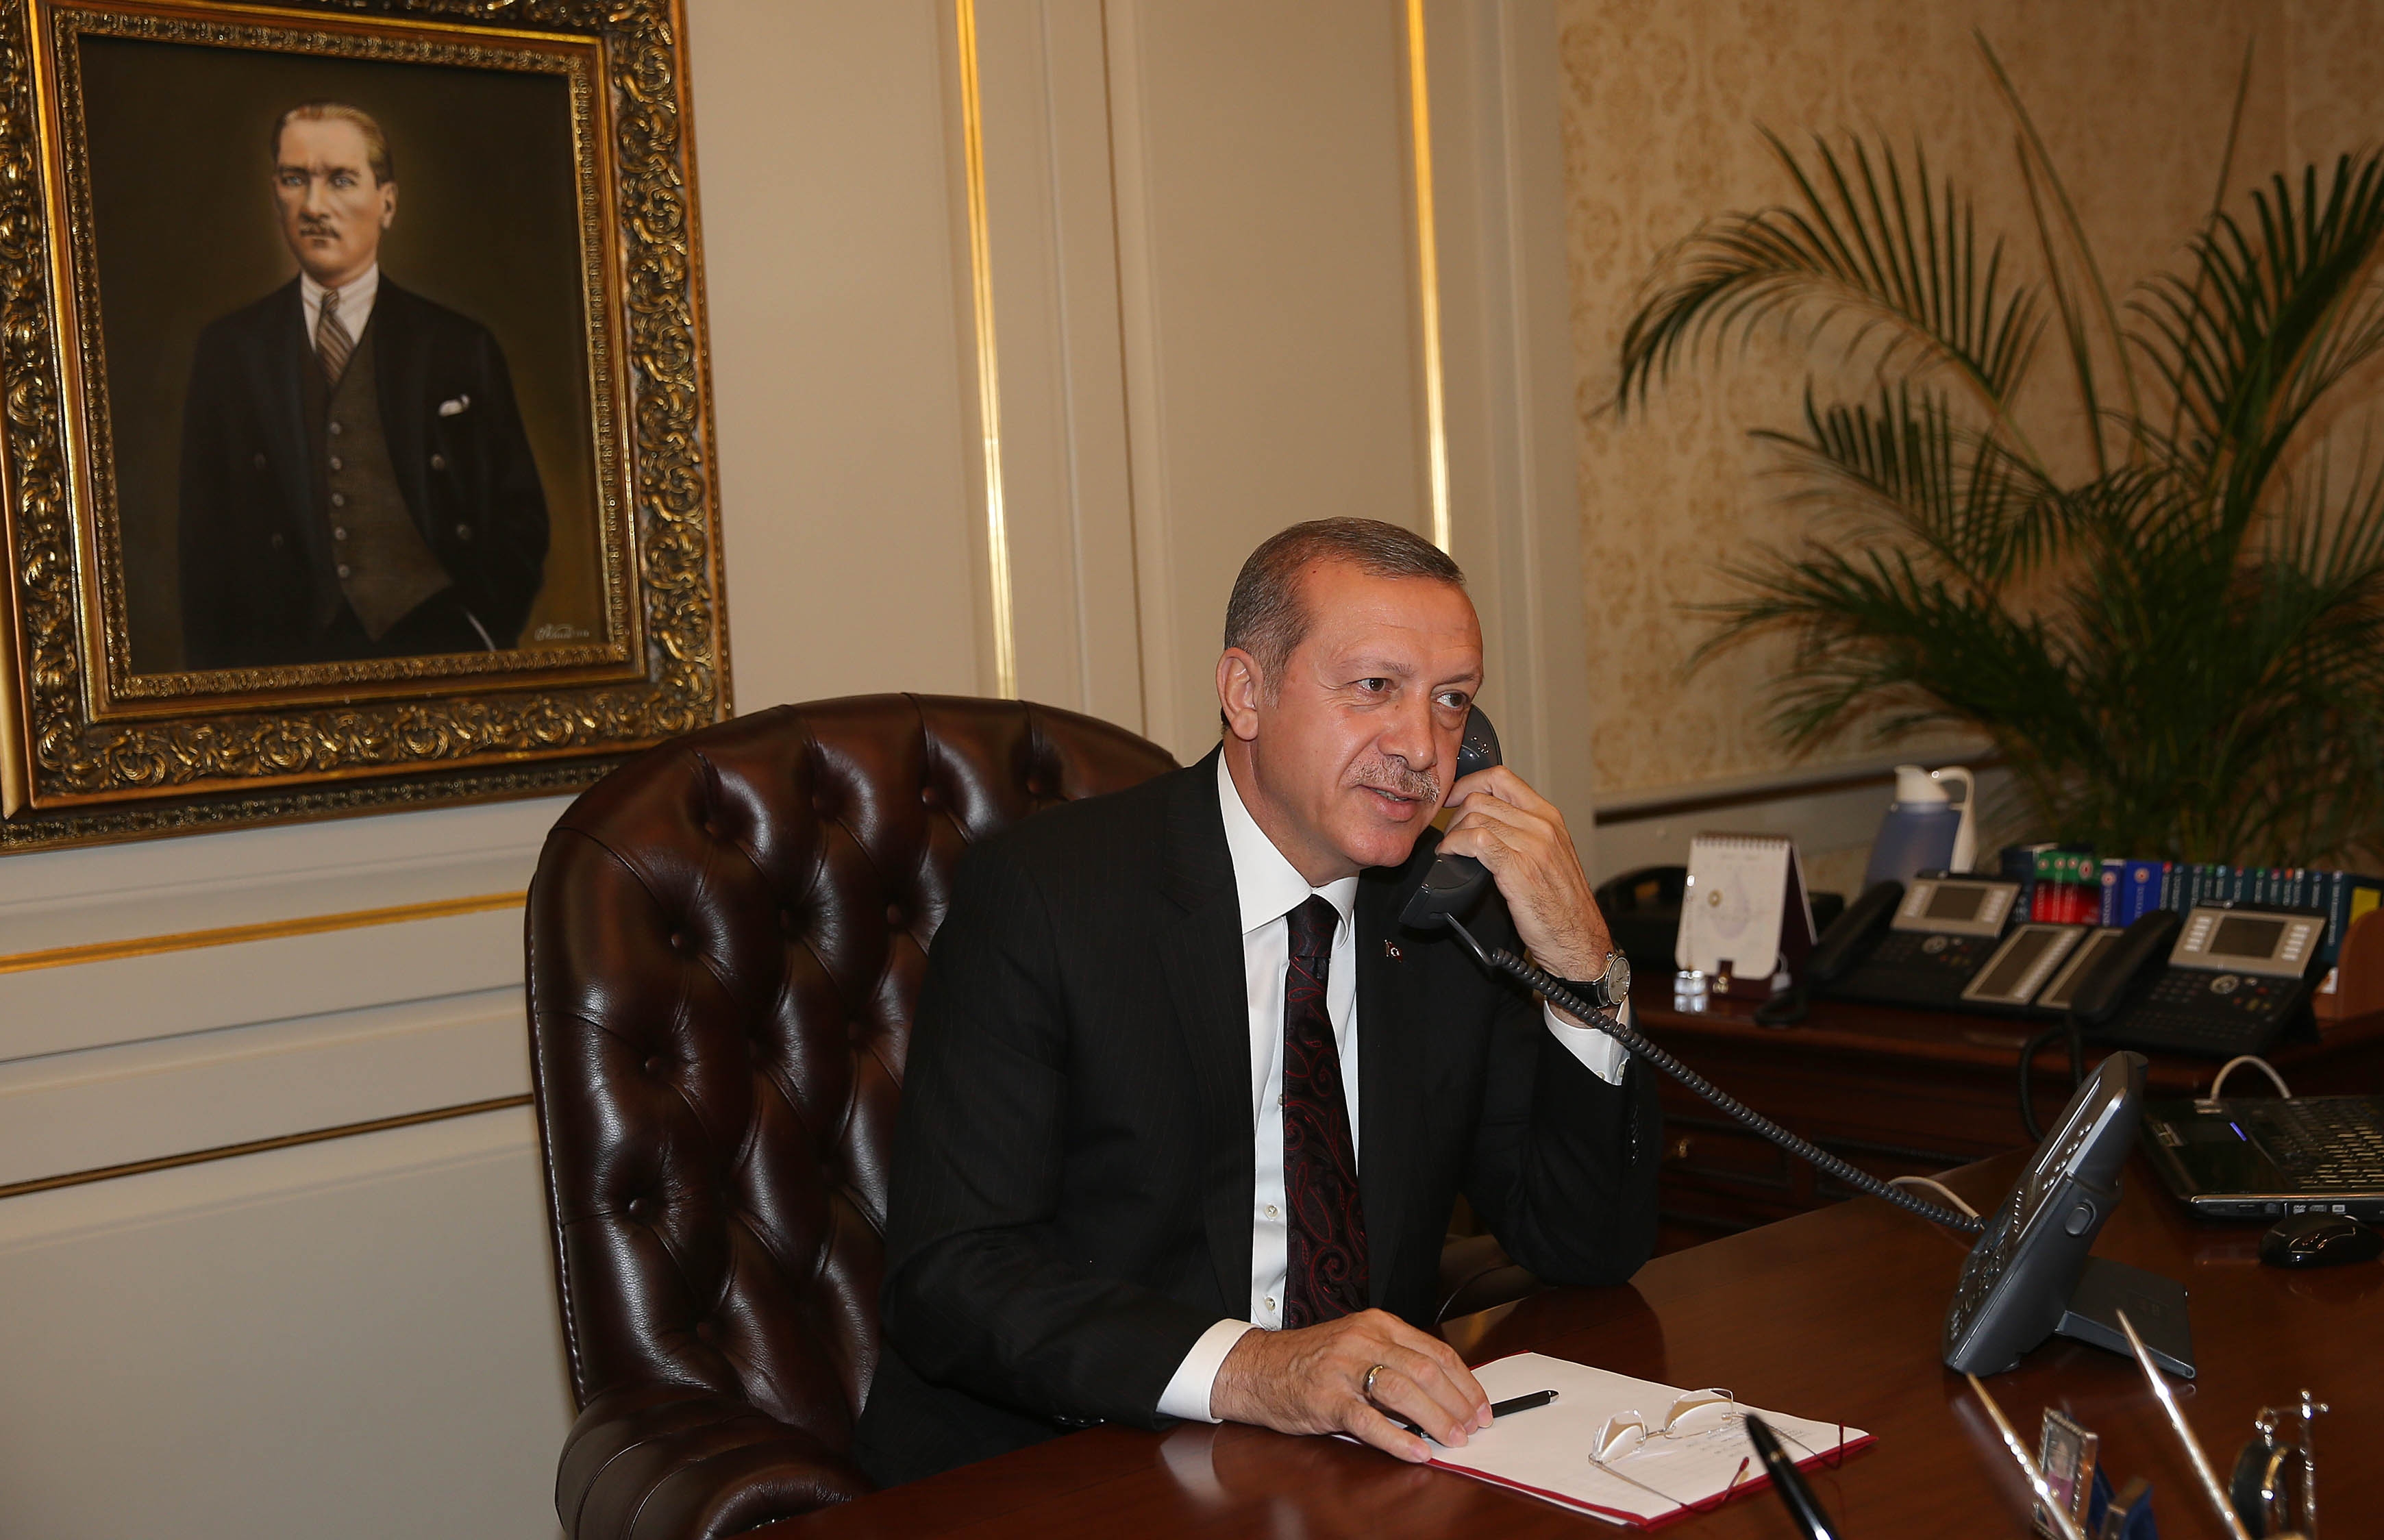 ترک صدر کی سویڈش وزیر اعظم اور نیٹو کے سیکرٹری جنرل سے رابطے